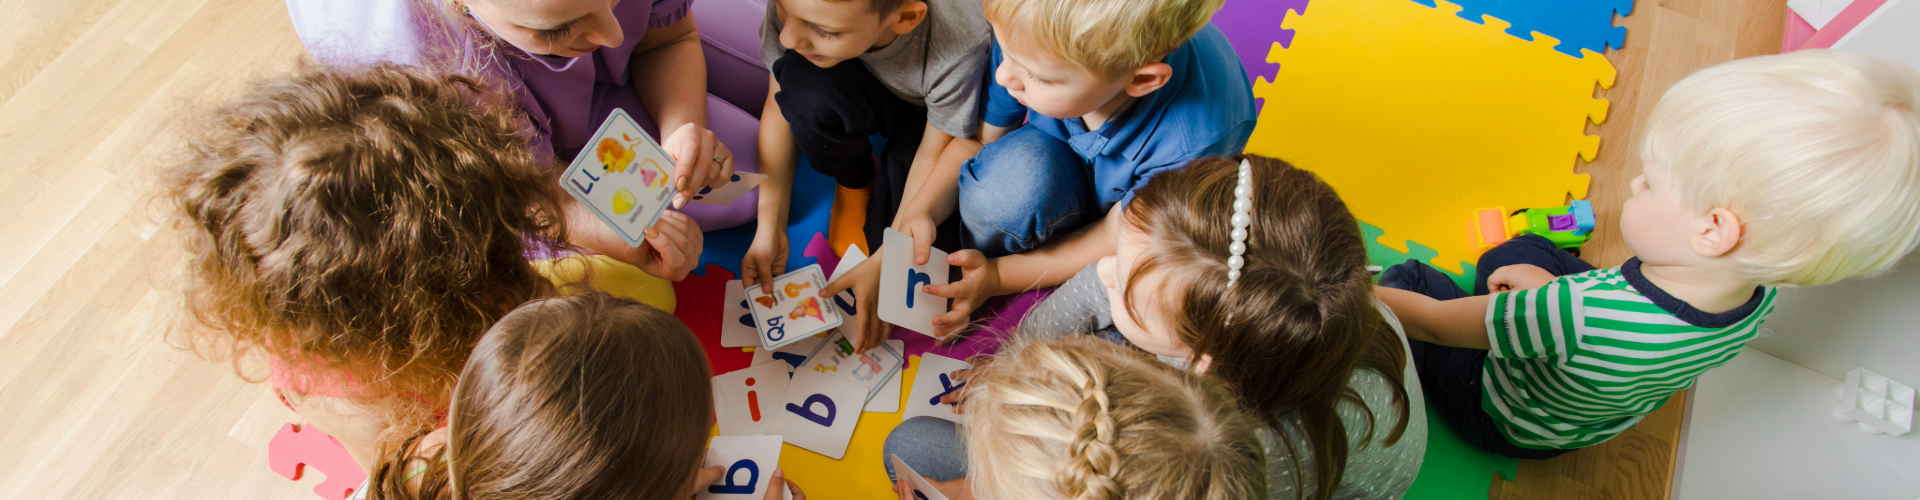 Aikuinen ja usemapi lapsi kuvattuna yläviistosta pelaamassa korttia värikkäälä alustalla.